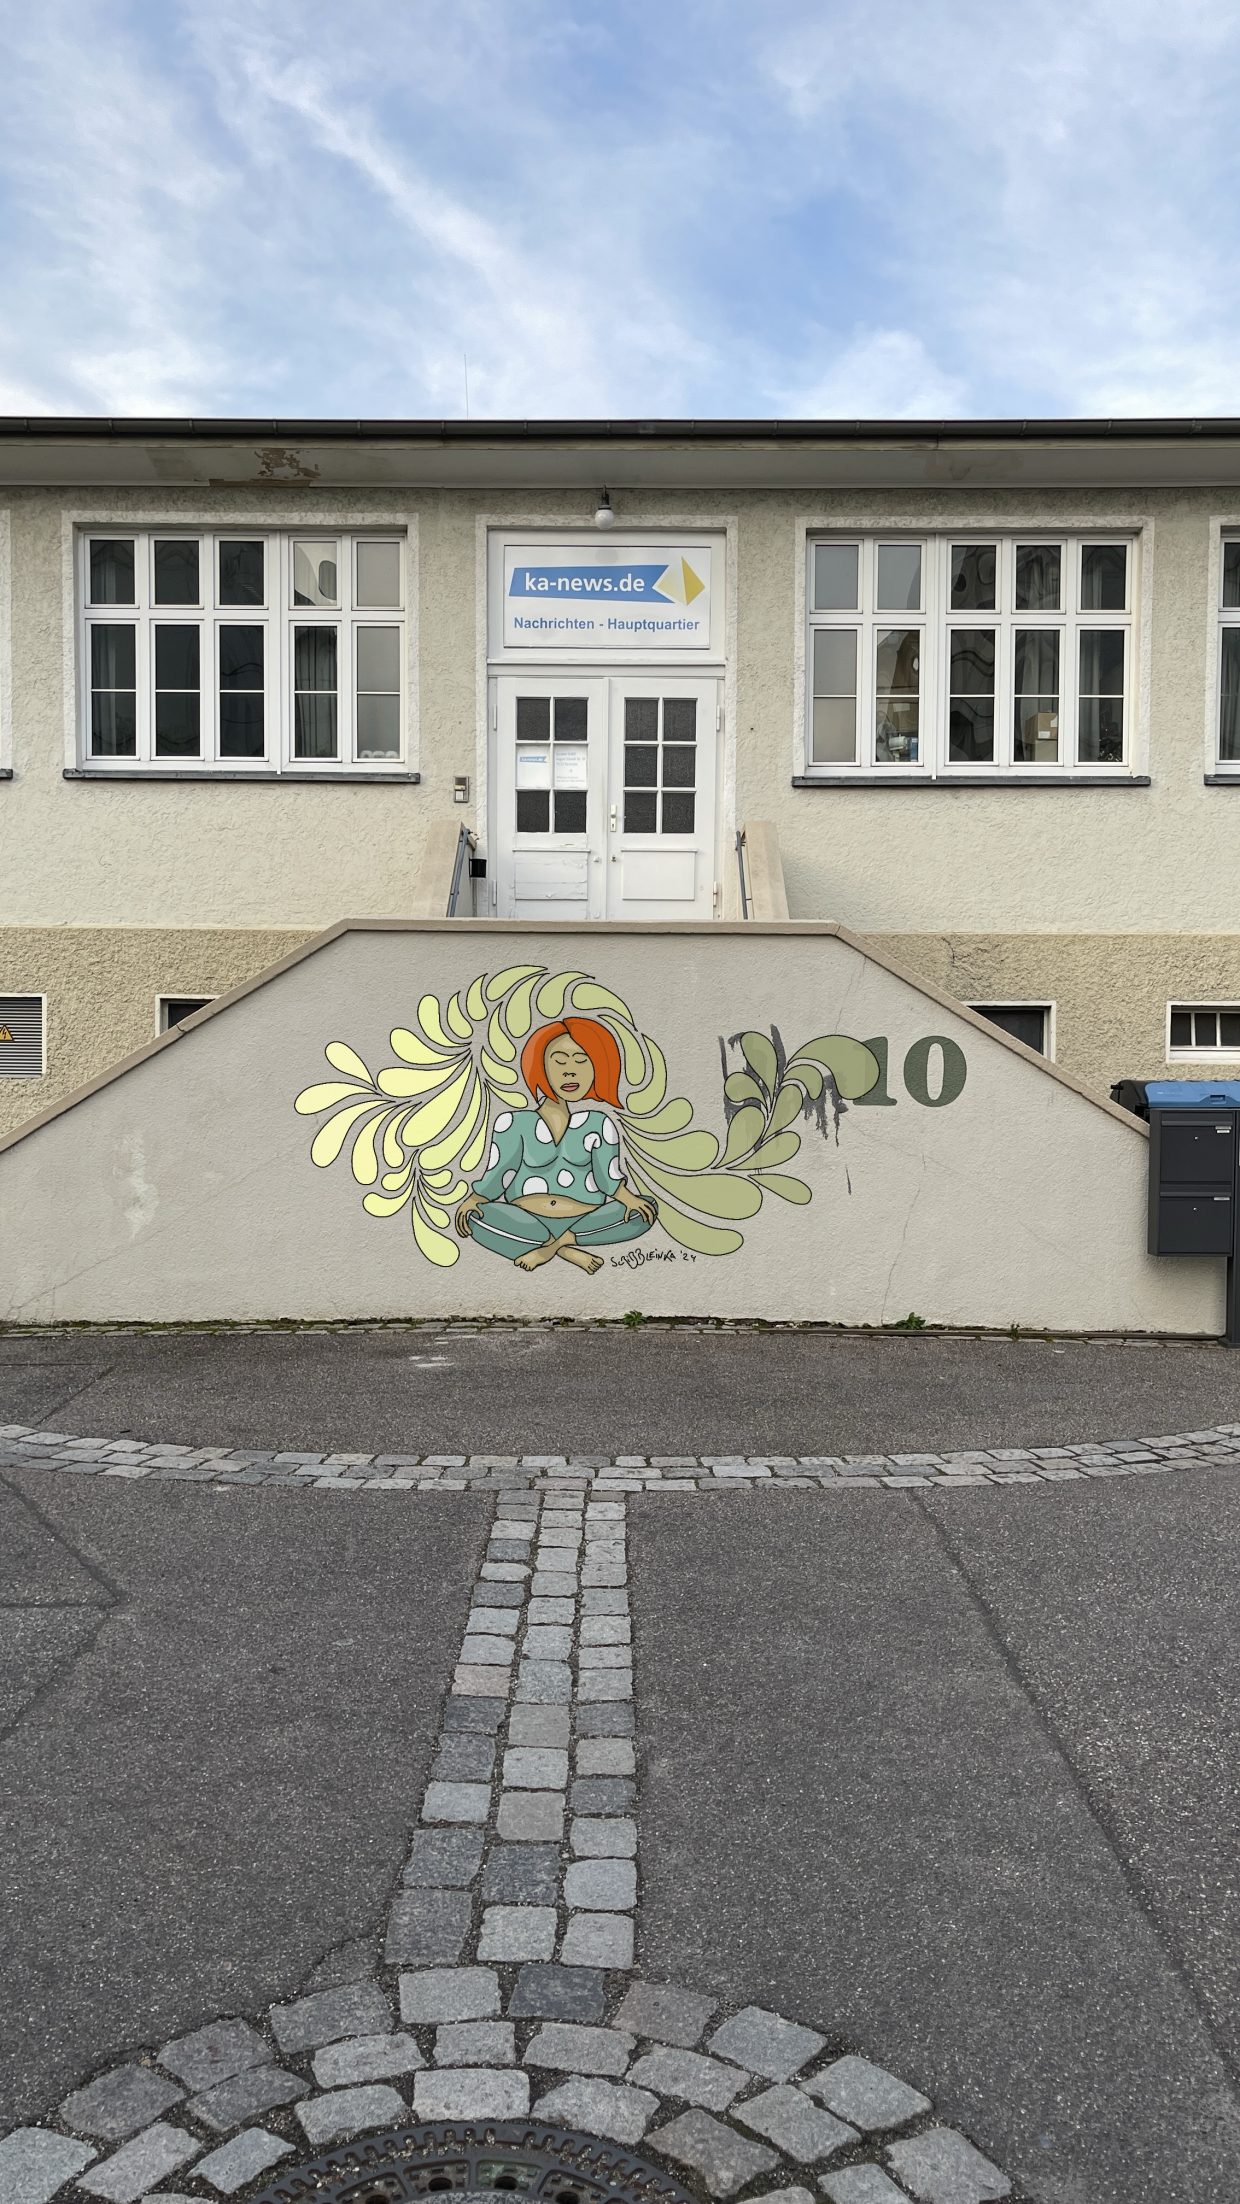 Treppe zum KA-News.de-Gebäude in der Karlsruher Oststadt. Davor ein Gemälde, auf der Mauer der Treppe mit einer meditierenden Frau in einer Art groben Gymnastik-Kleidung.